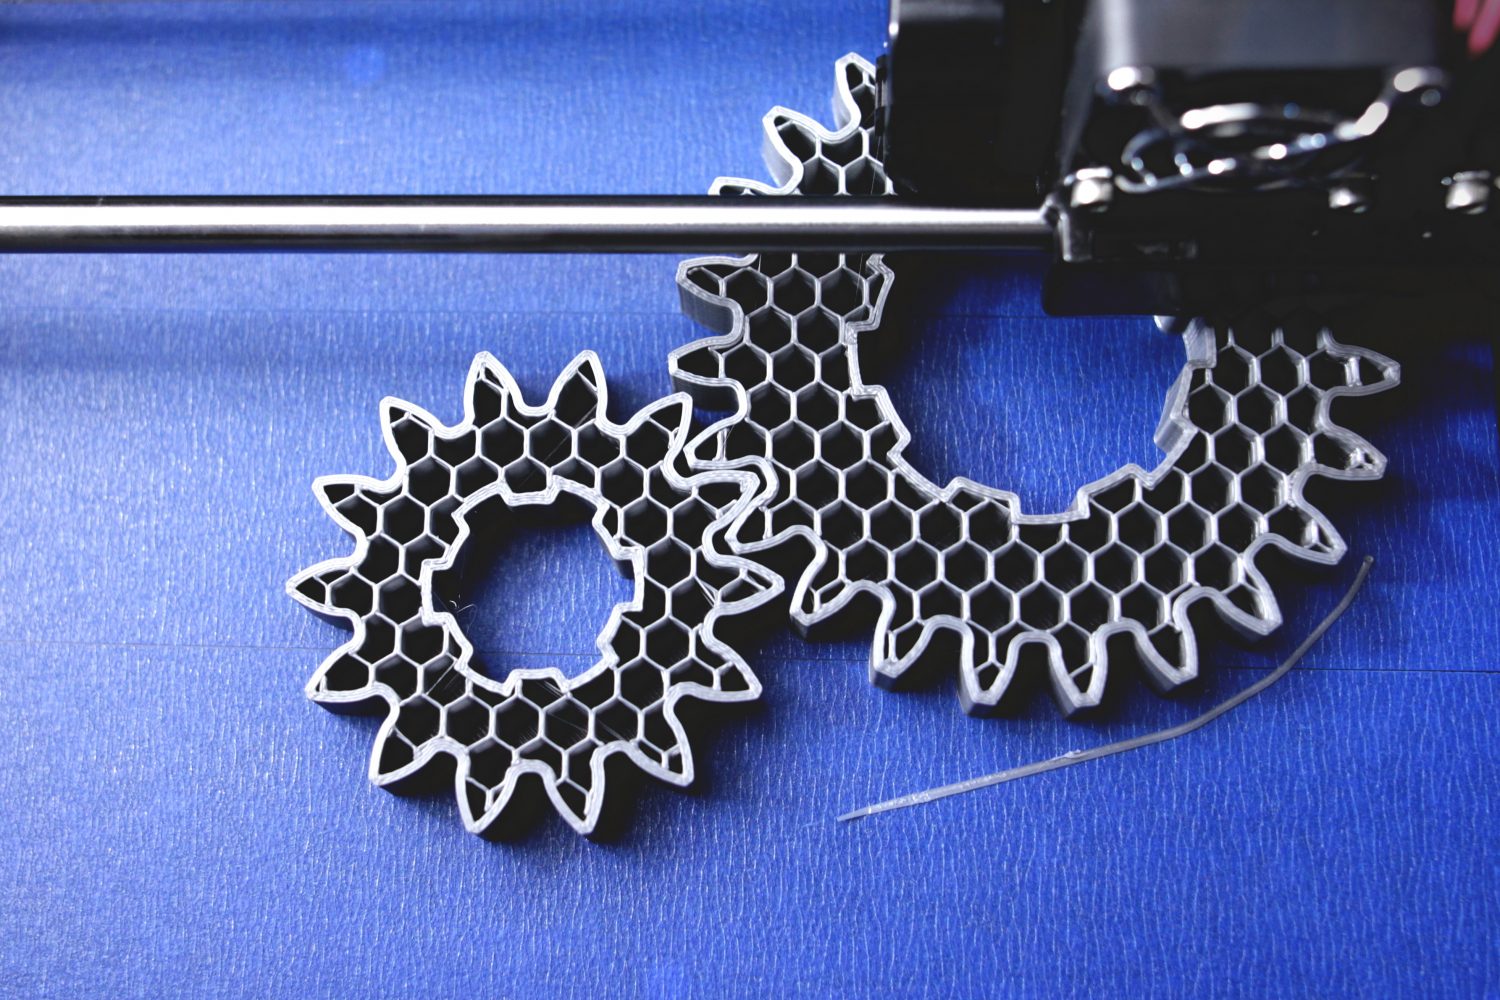 Bauteile aus dem 3D-Drucker können ungewohnte Kombinationen von Funktionalität erzielen. Dies sollte in Kosten/Nutzen-Berechnungen einfließen.  (Bild: ©Roman/stock.adobe.com)